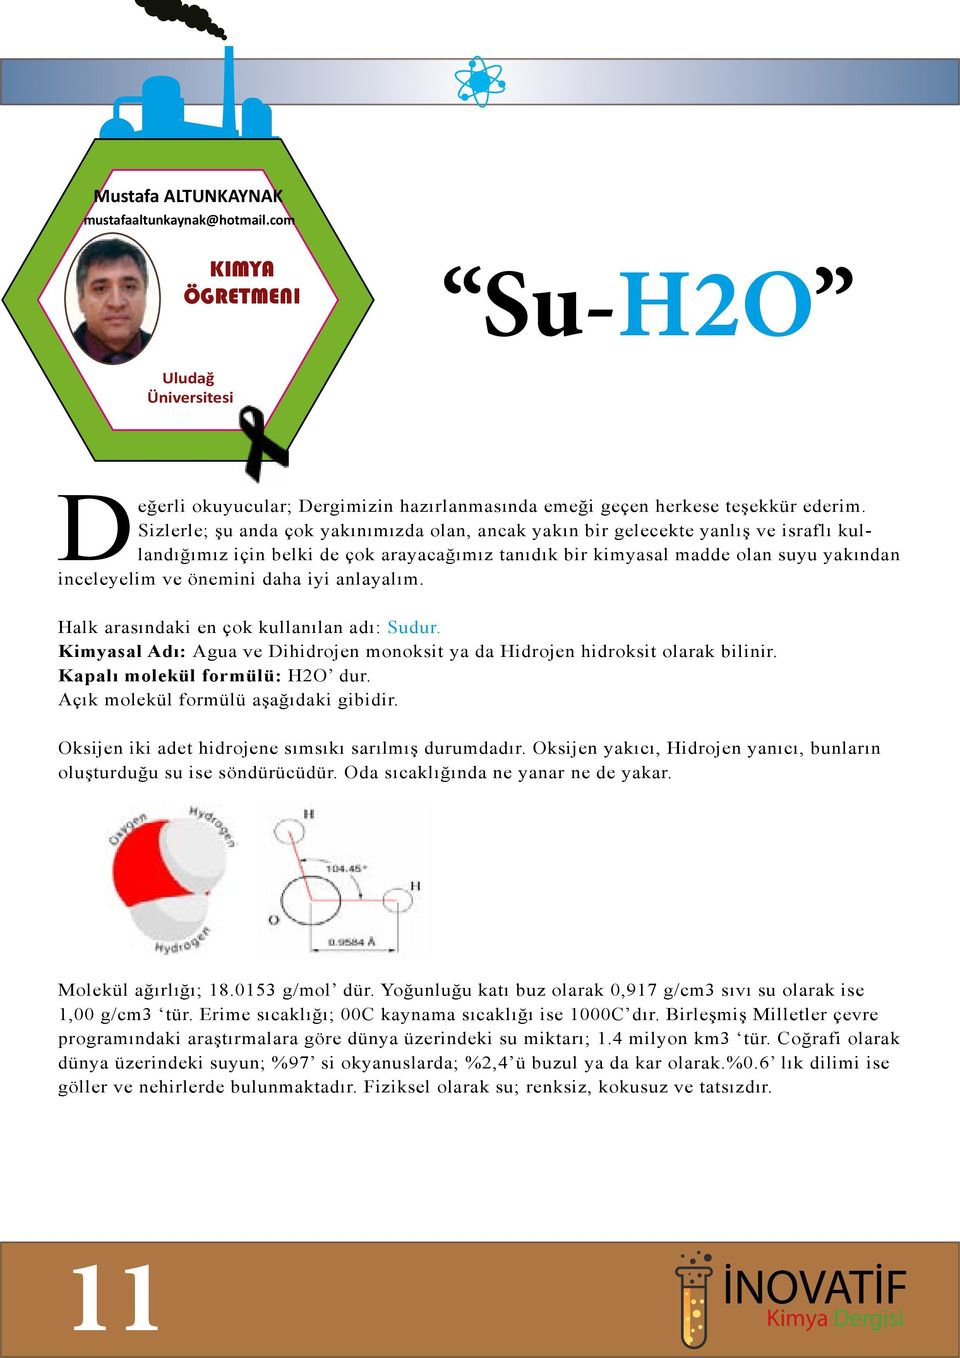 daha iyi anlayalım. Halk arasındaki en çok kullanılan adı: Sudur. Kimyasal Adı: Agua ve Dihidrojen monoksit ya da Hidrojen hidroksit olarak bilinir. Kapalı molekül formülü: H2O dur.